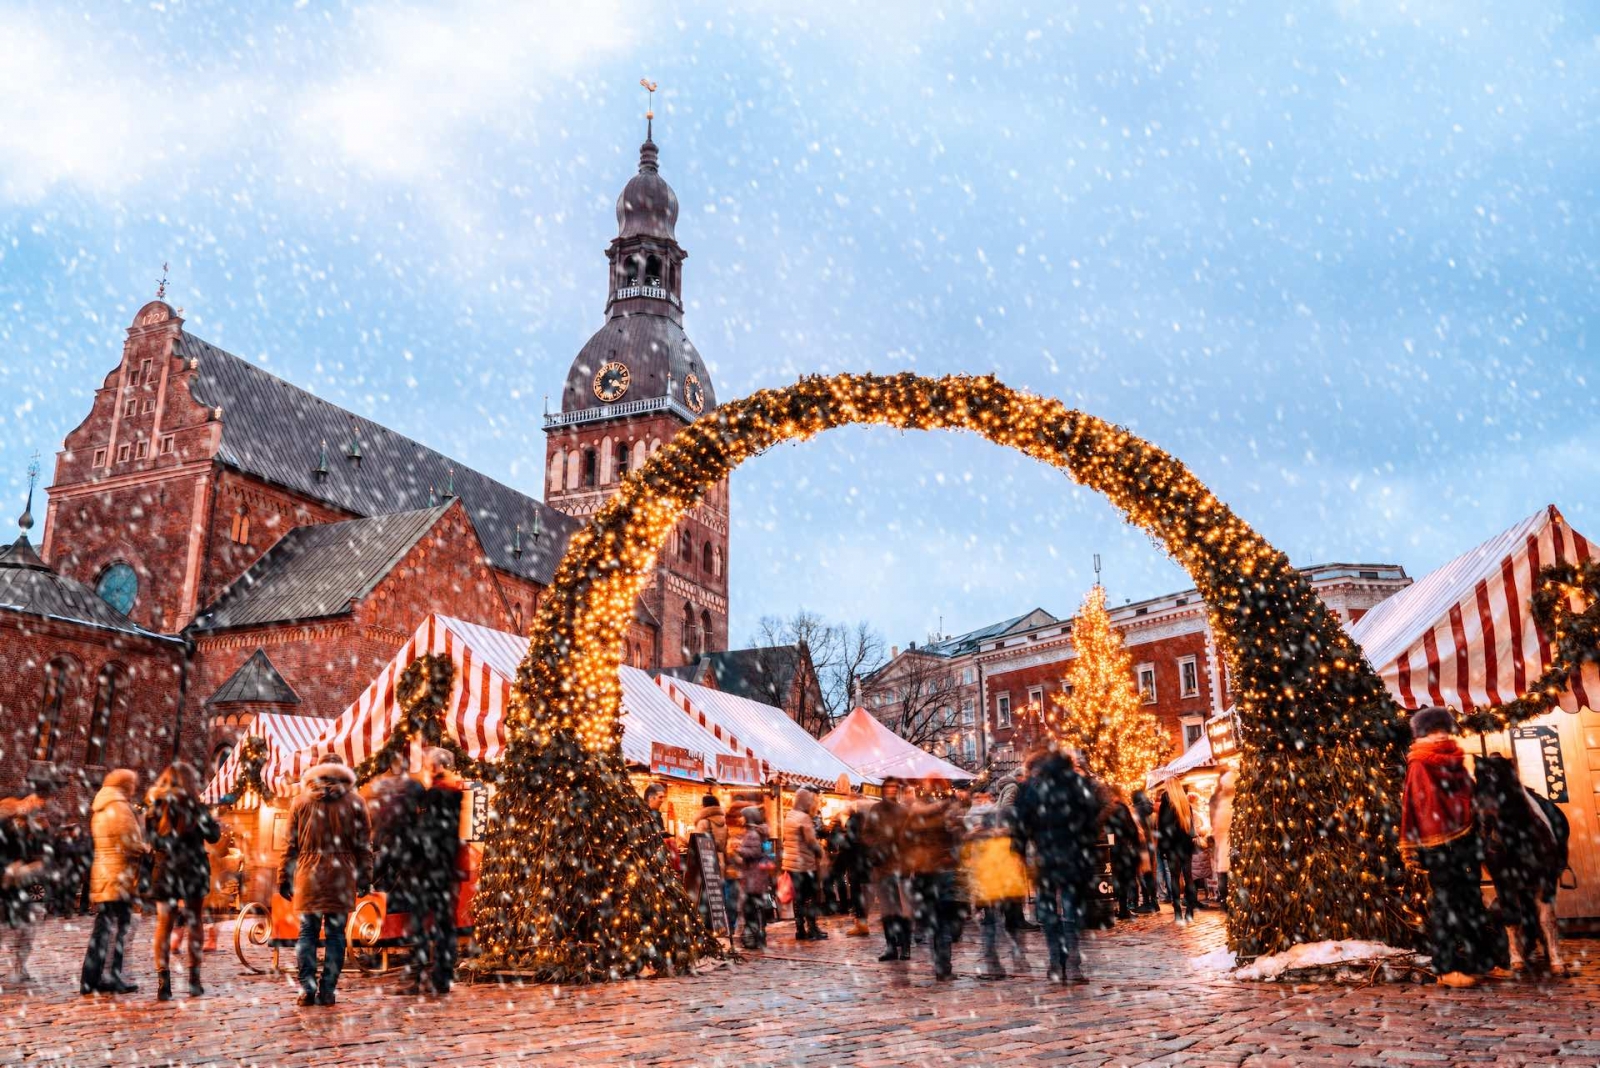 Mercado de Navidad y el principal árbol de Navidad ubicado en la plaza Dome en la antigua Riga, Letonia